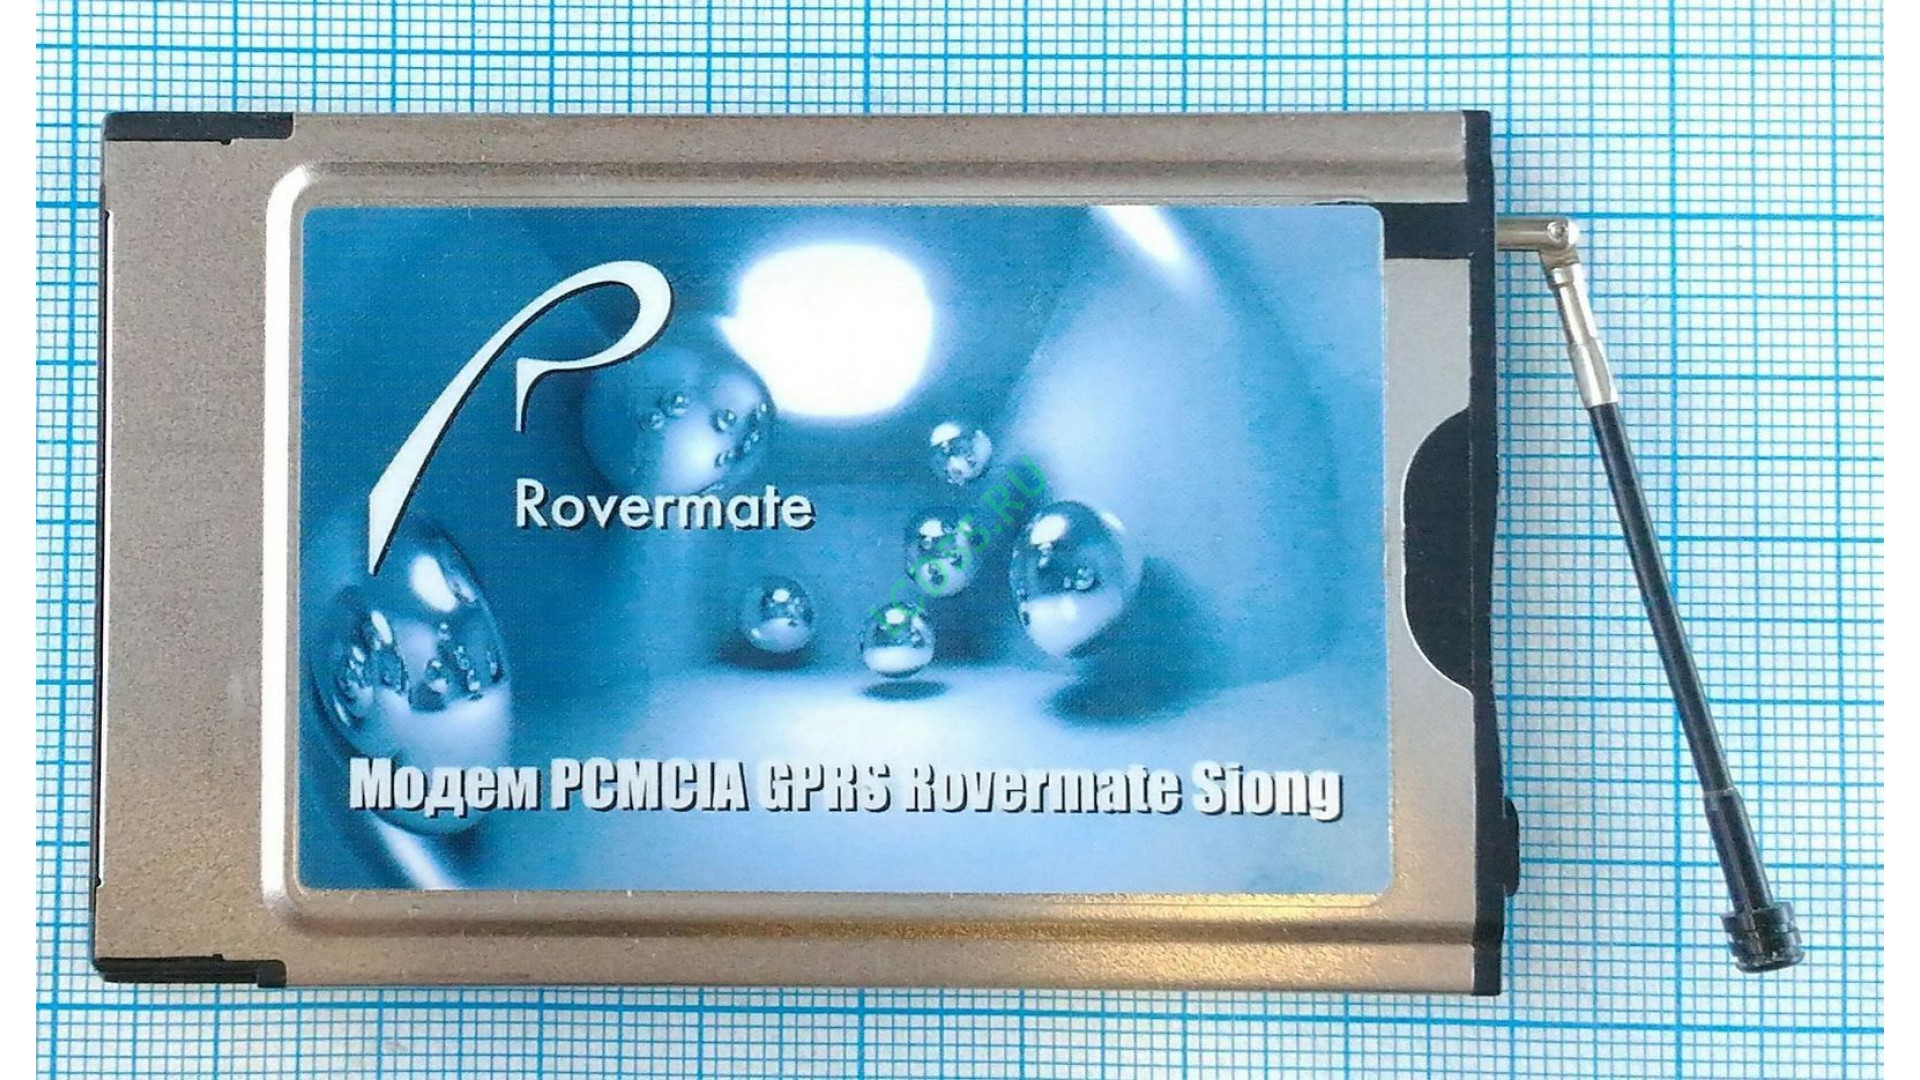 Модем GPRS/EDGE Rover Siong Adaptmate-014